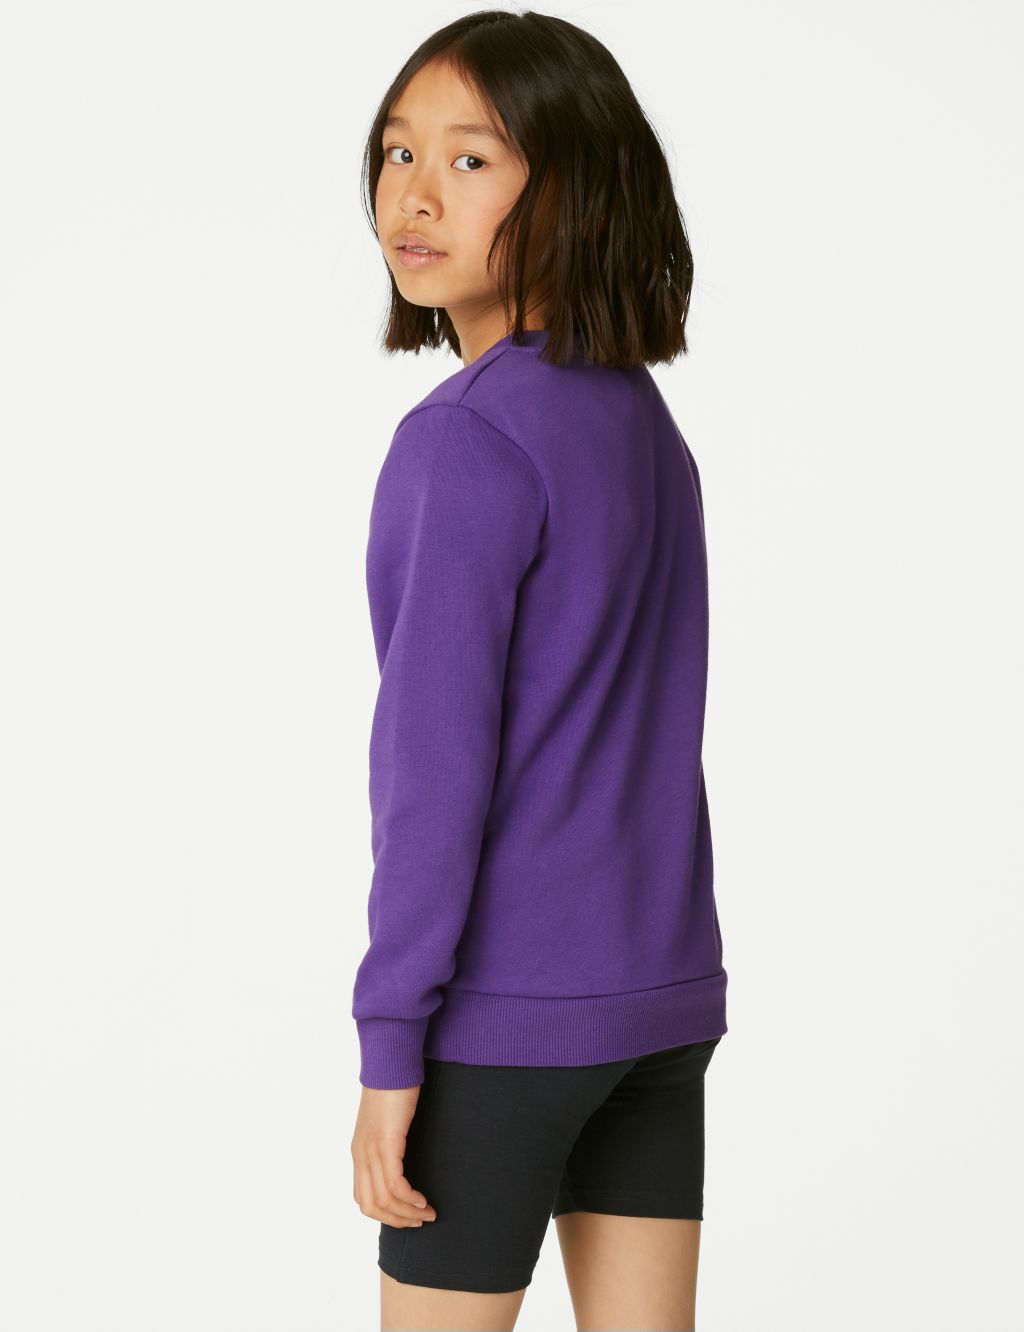 Unisex Cotton V-Neck Sweatshirt (2-16 Yrs) image 5